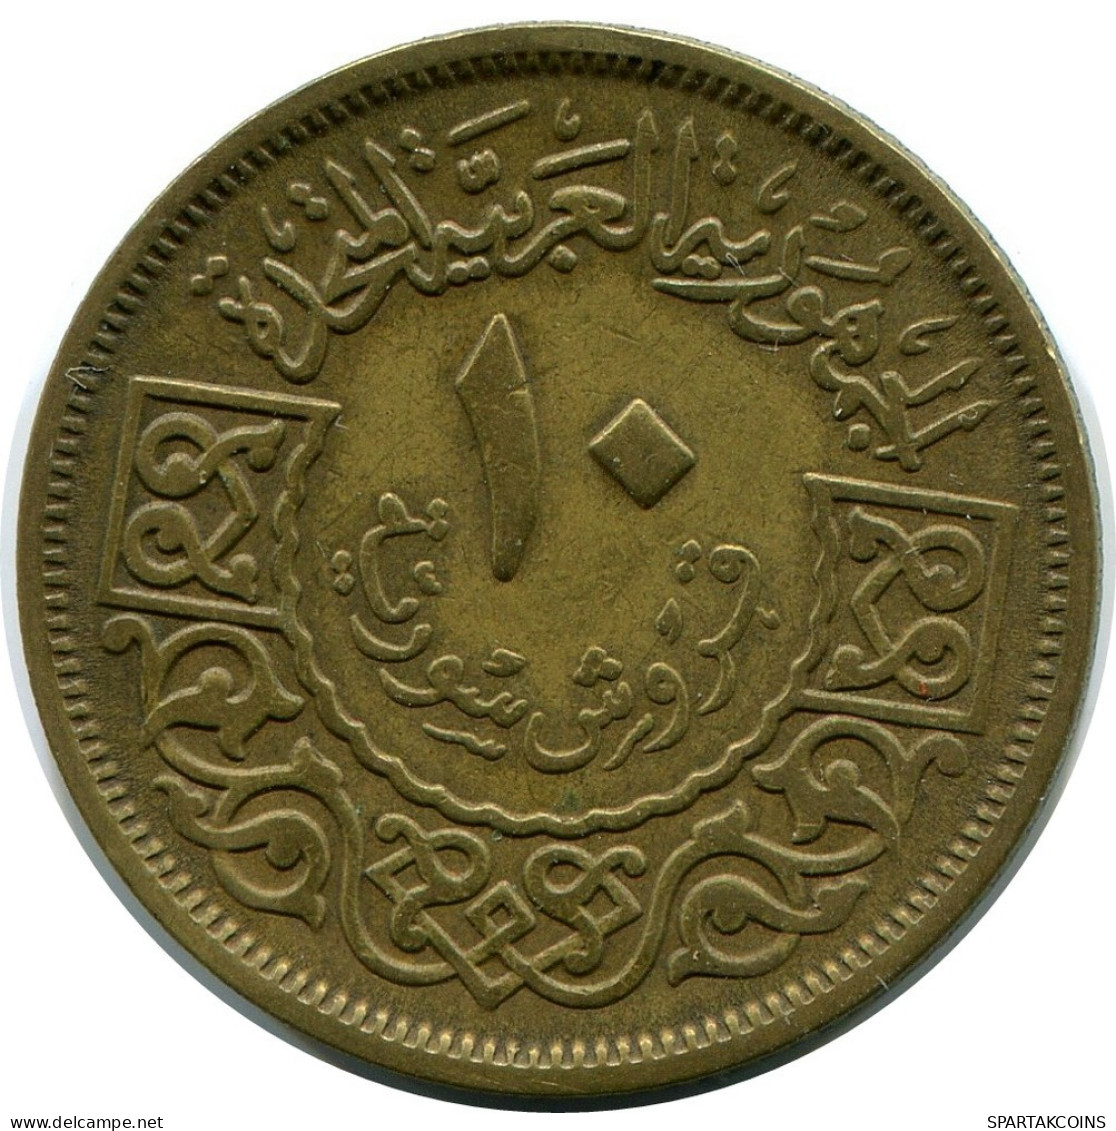 10 QIRSH / PIASTRES 1960 SYRIEN SYRIA Islamisch Münze #AP557.D.D.A - Siria